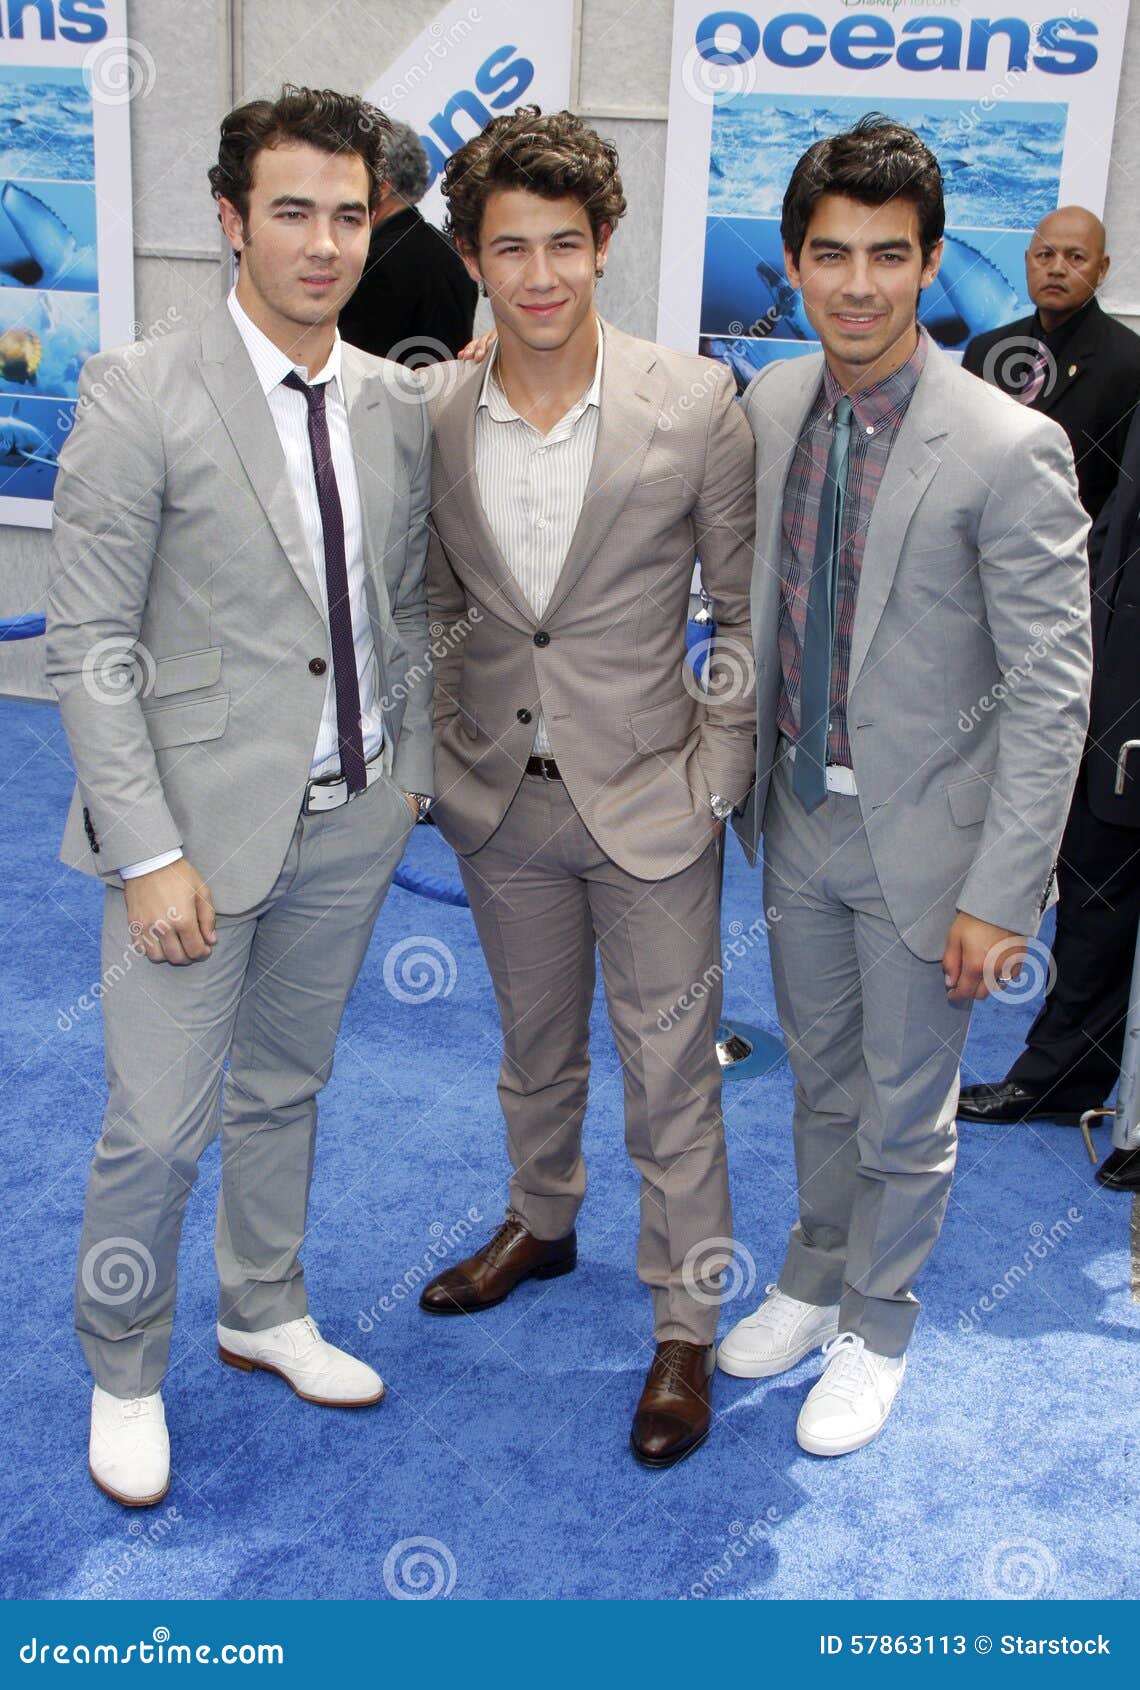 The Jonas Brothers, Nick Jonas, Joe Jonas and Kevin Jonas and